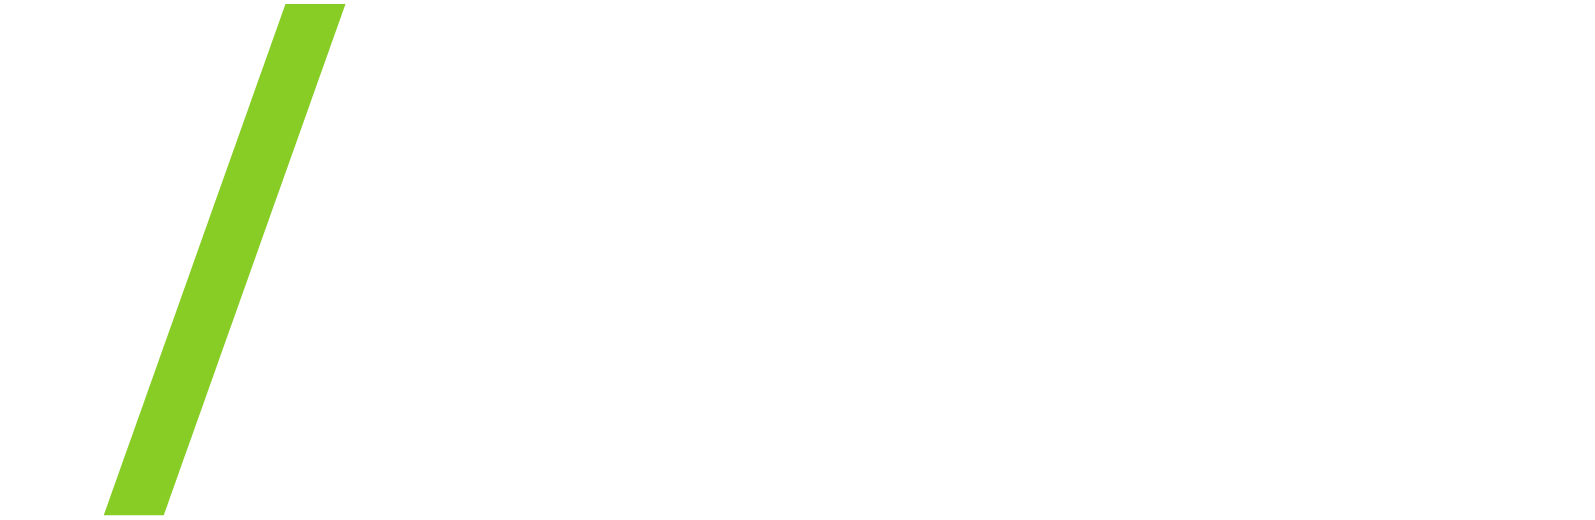 Advanced Drainage Systems
 logo pour fonds sombres (PNG transparent)